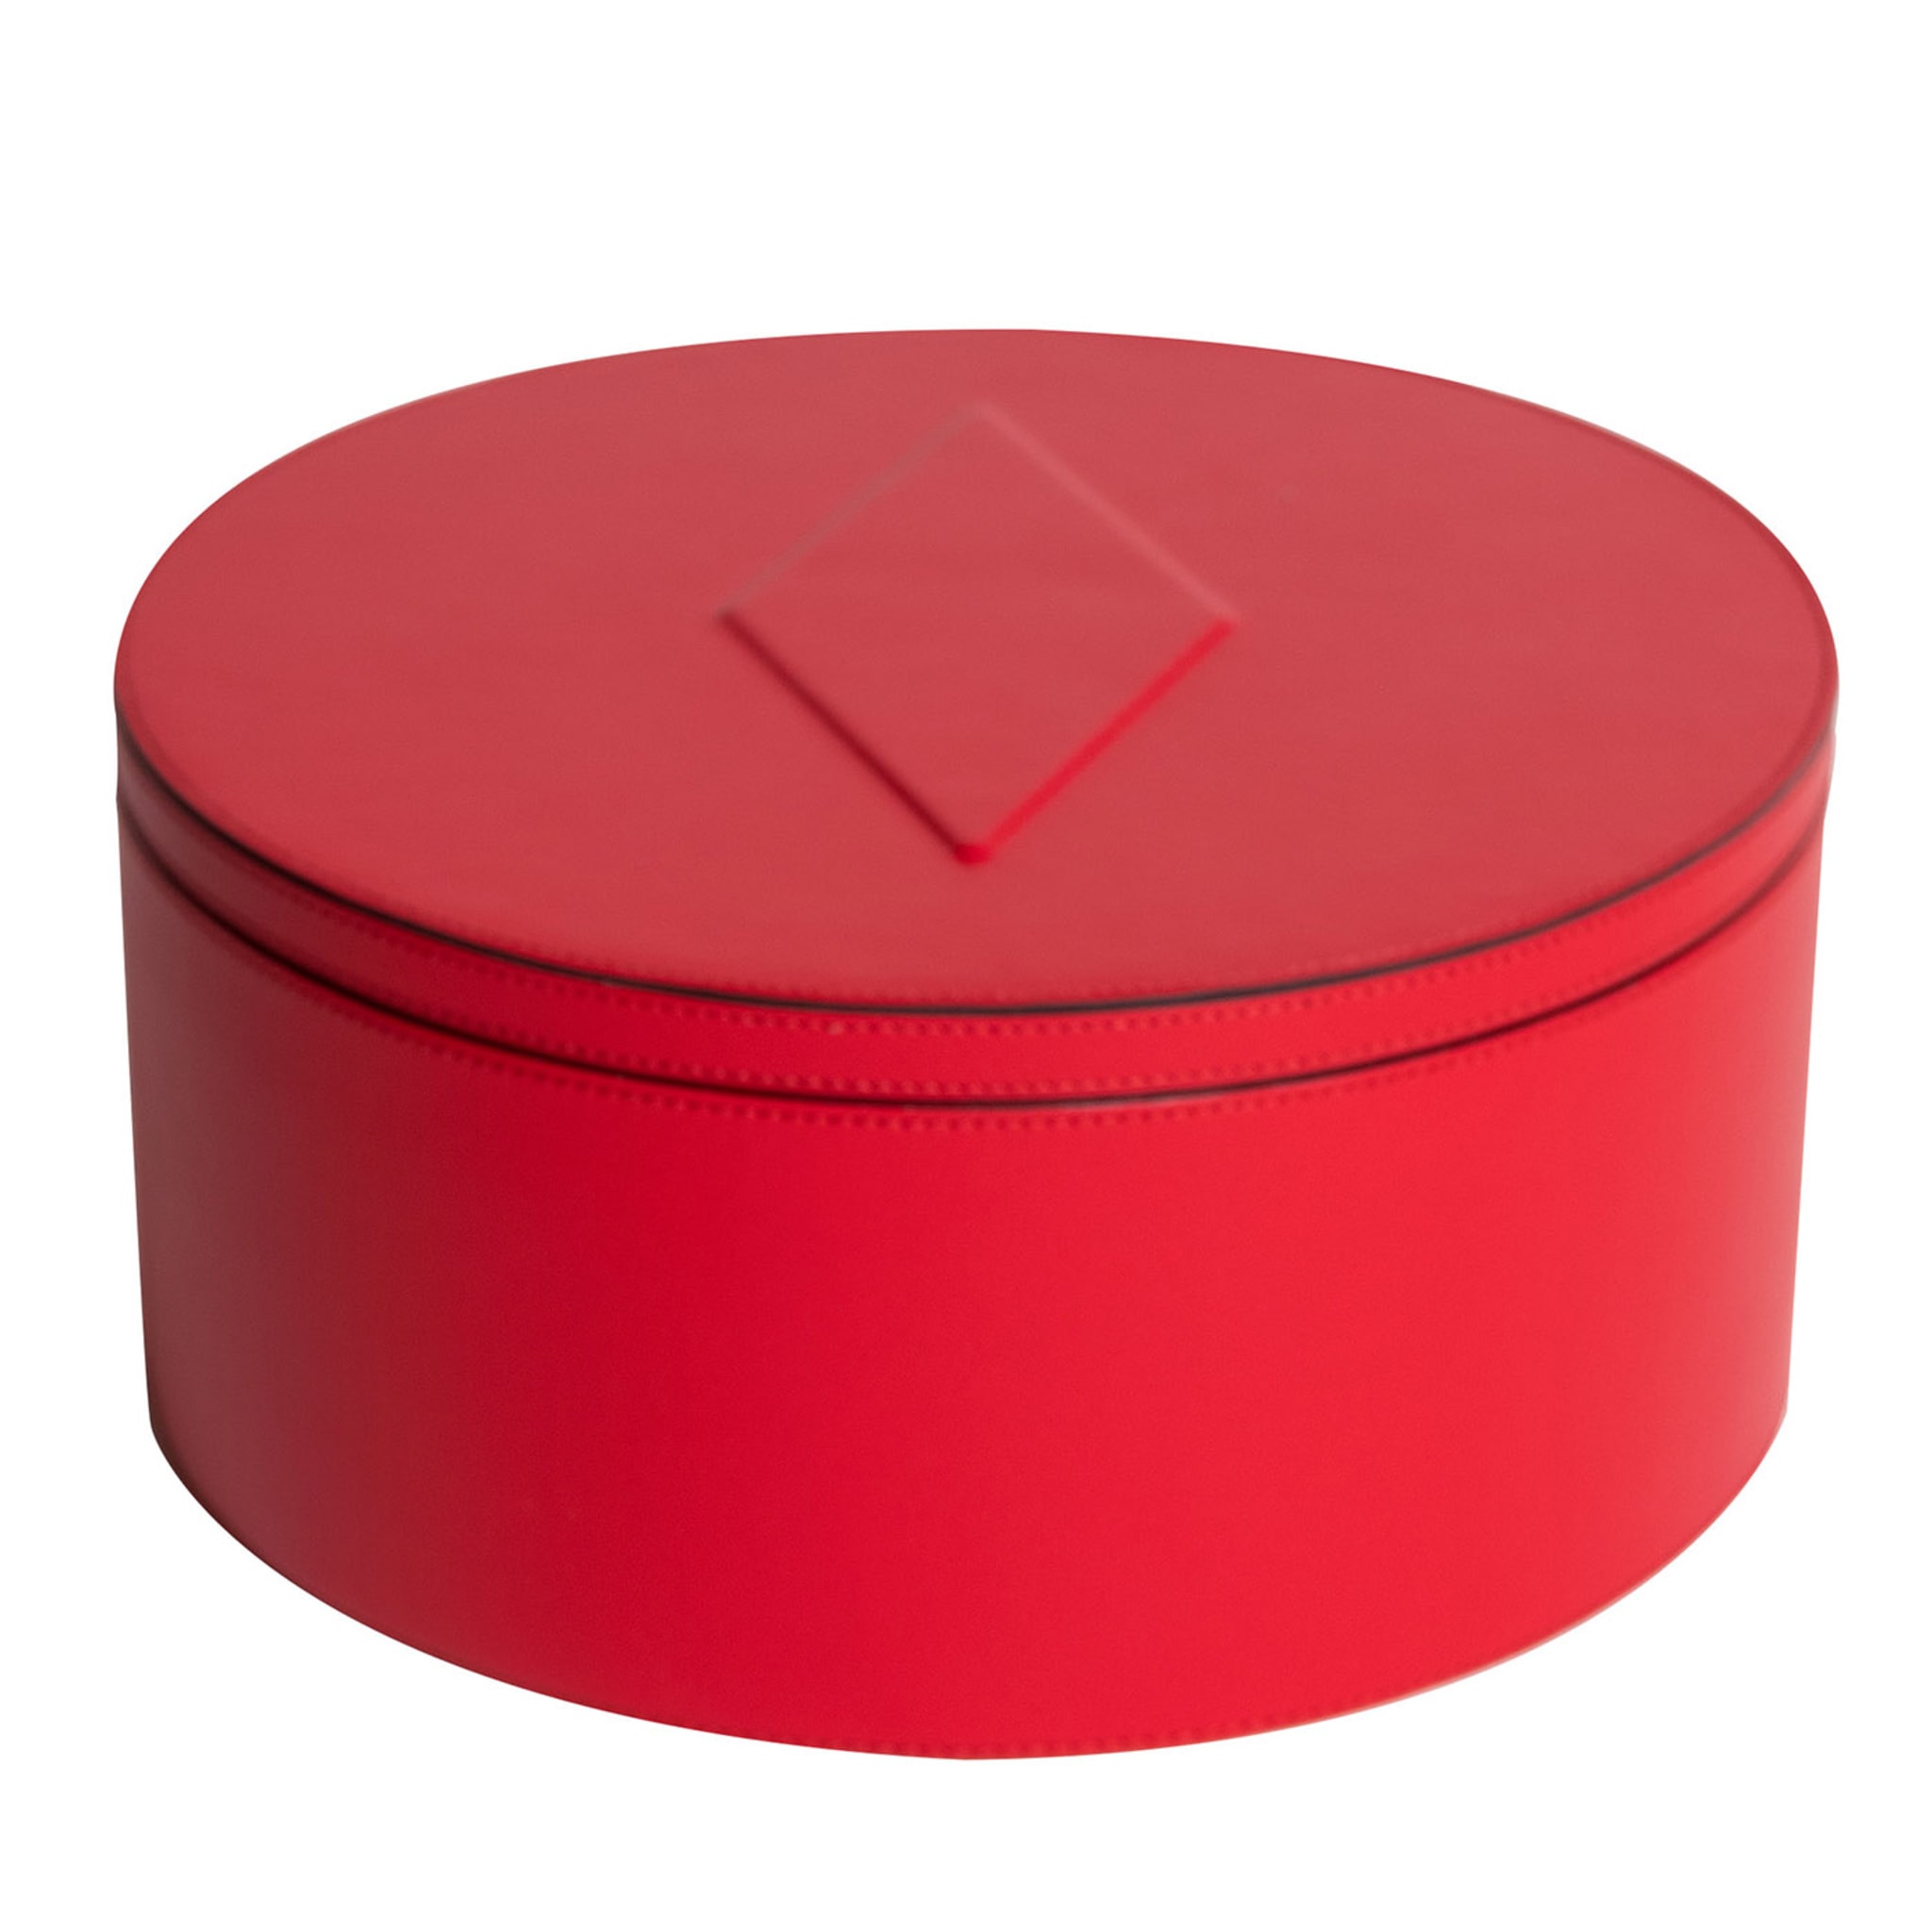 Intarsio True Red Circle Box - Vista principale